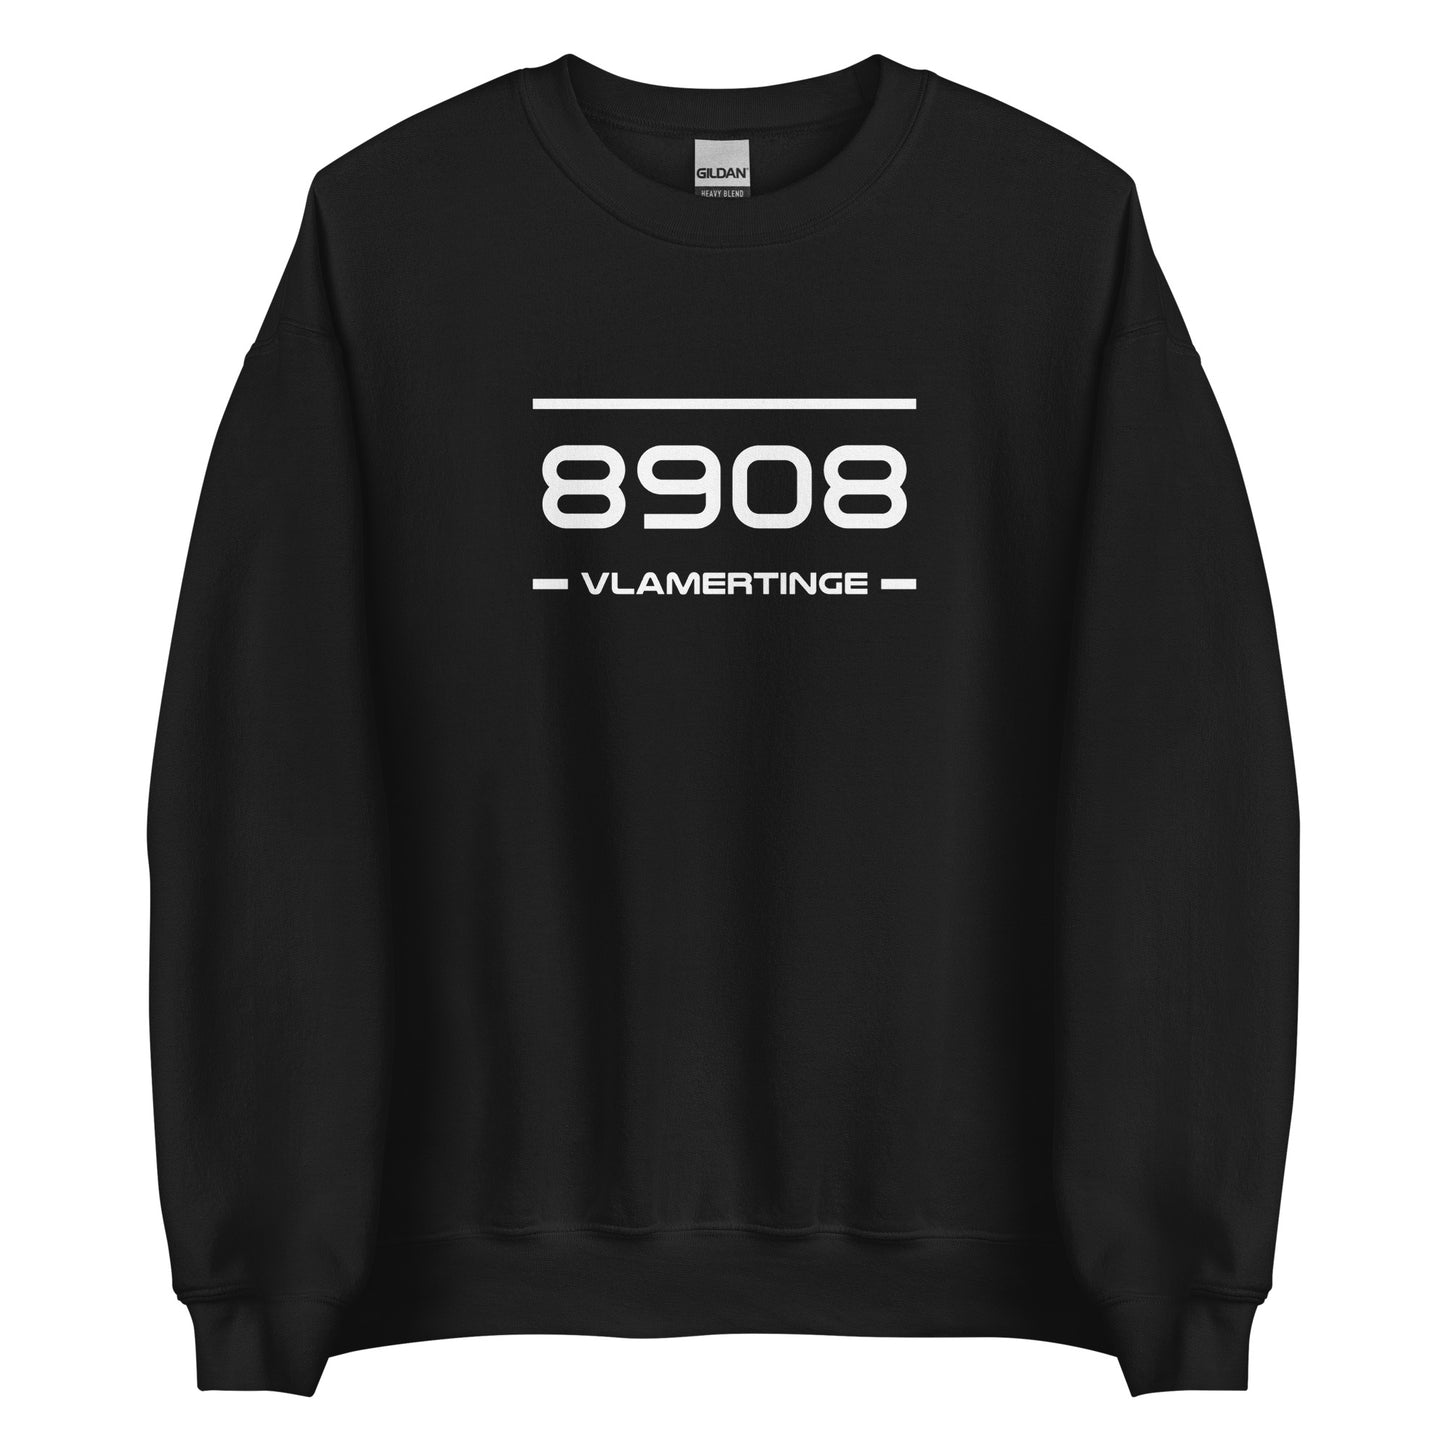 Sweater - 8908 - Vlamertinge (M/V)